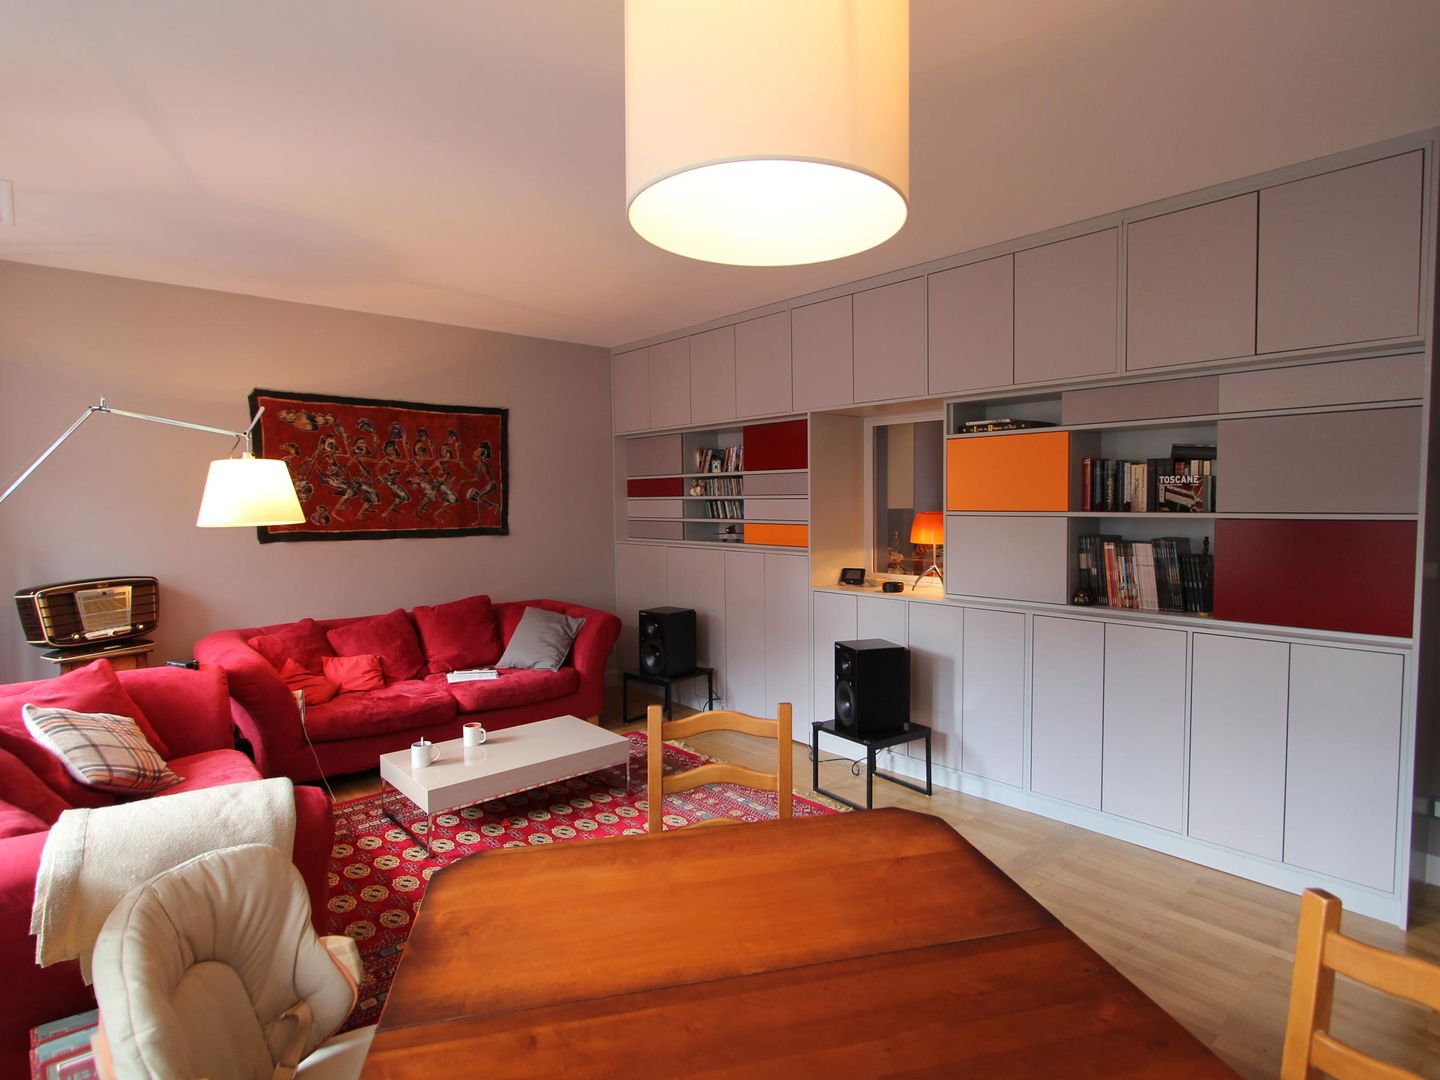 Réhabilitation d'un appartement à Strasbourg, Ae-design Ae-design غرفة المعيشة